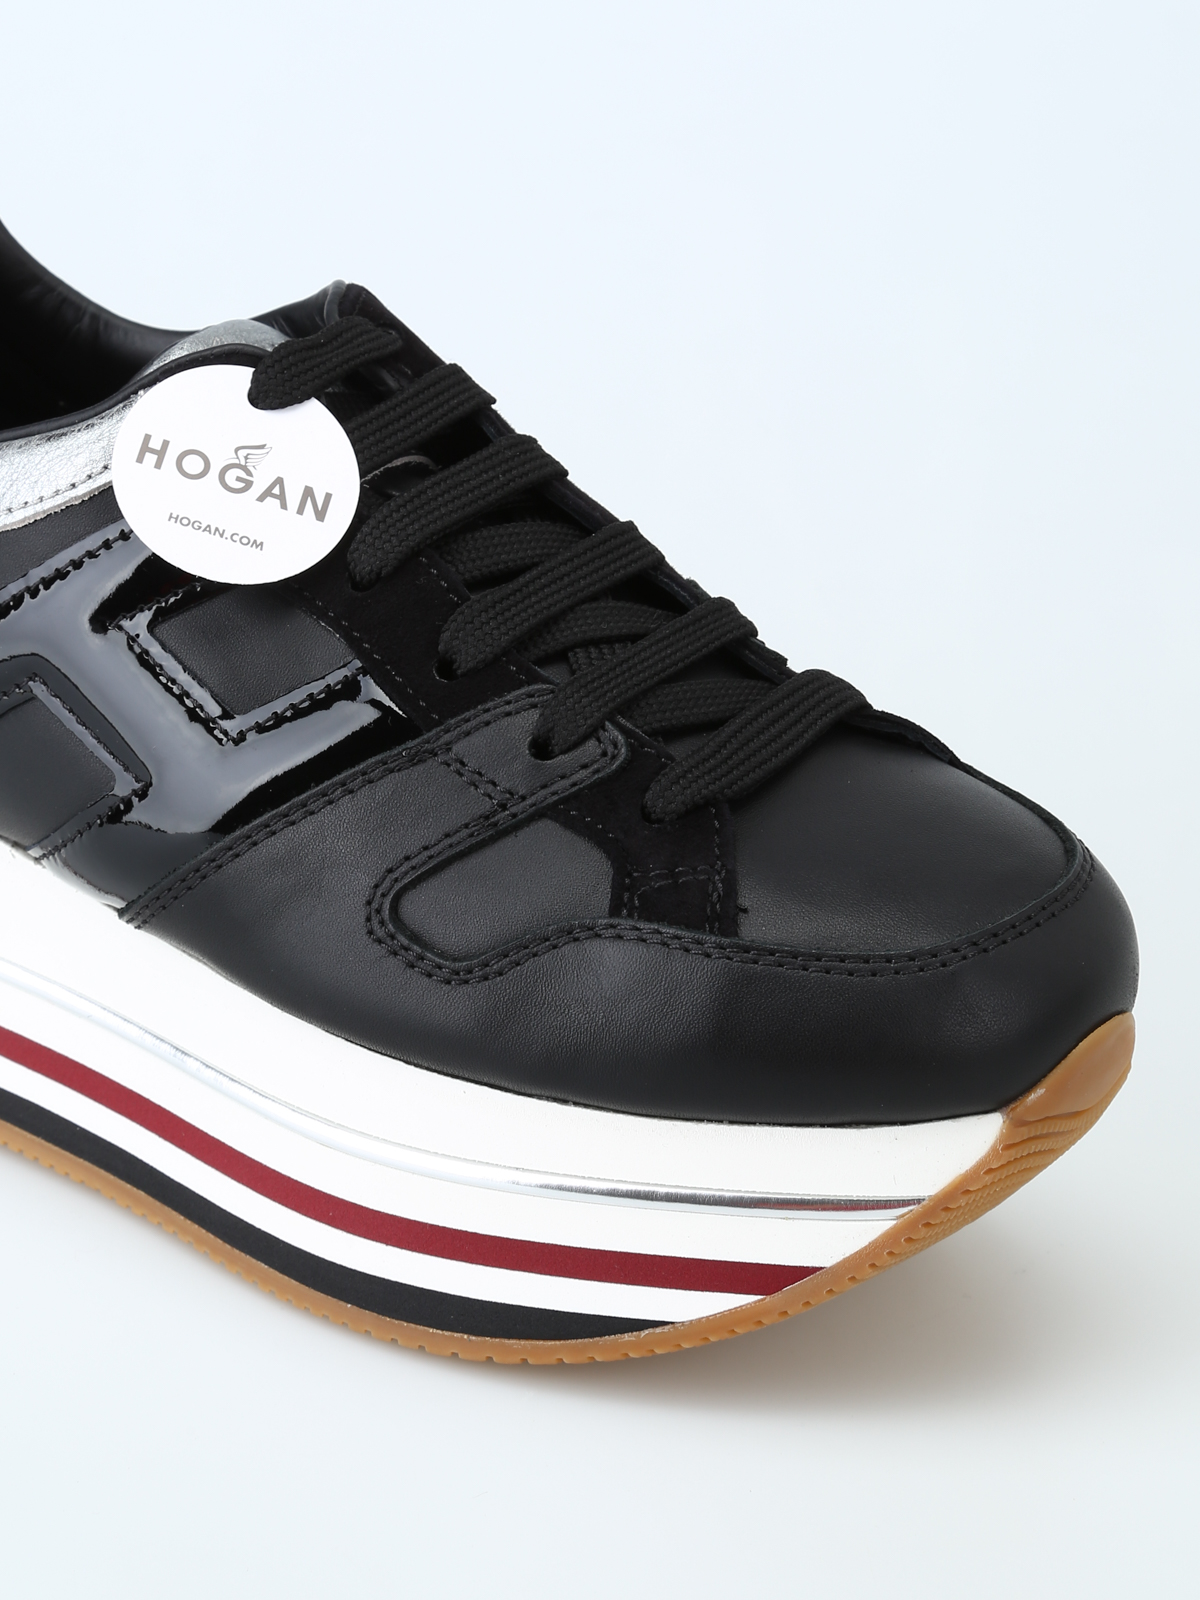 hogan maxi platform sneakers